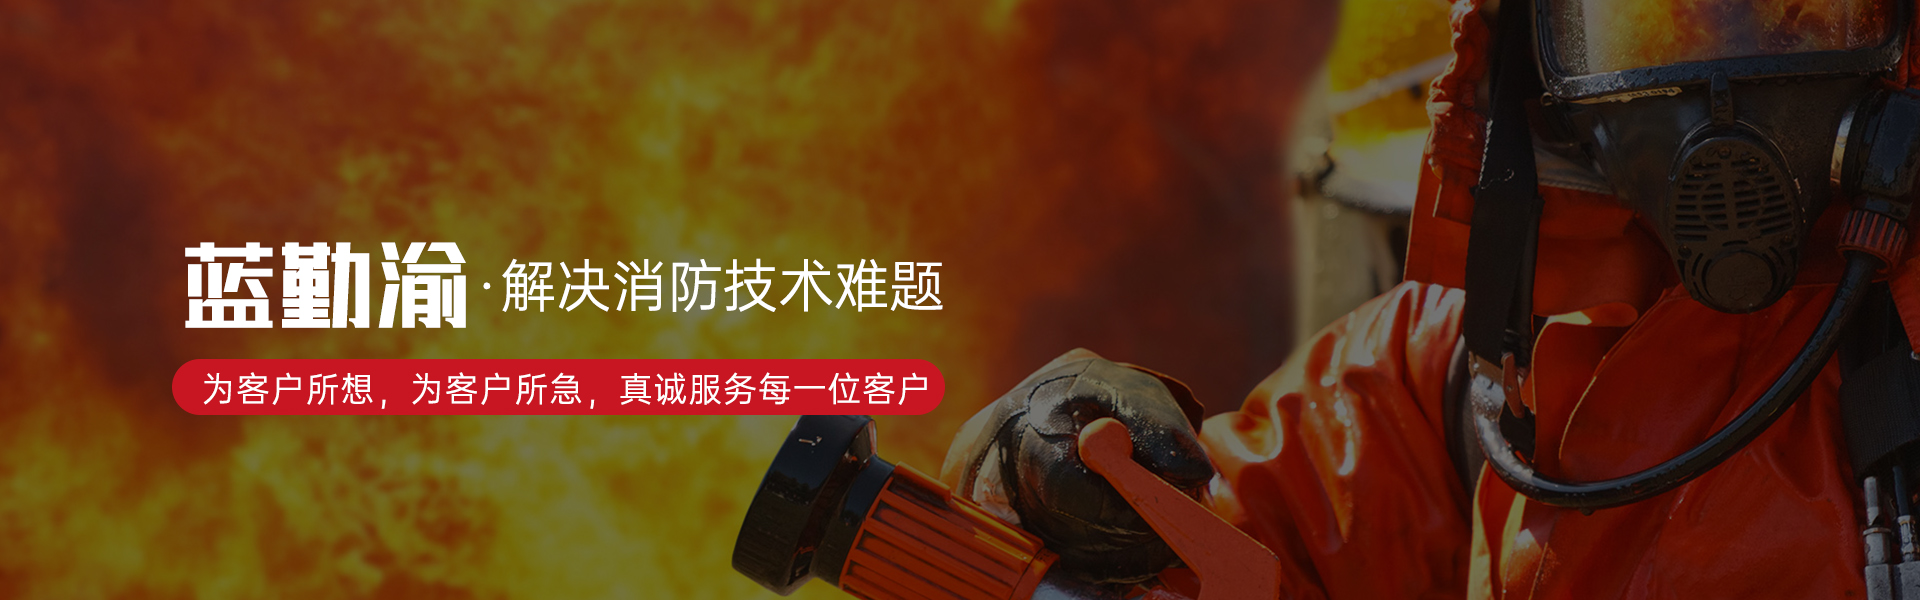 重慶消防器材銷售